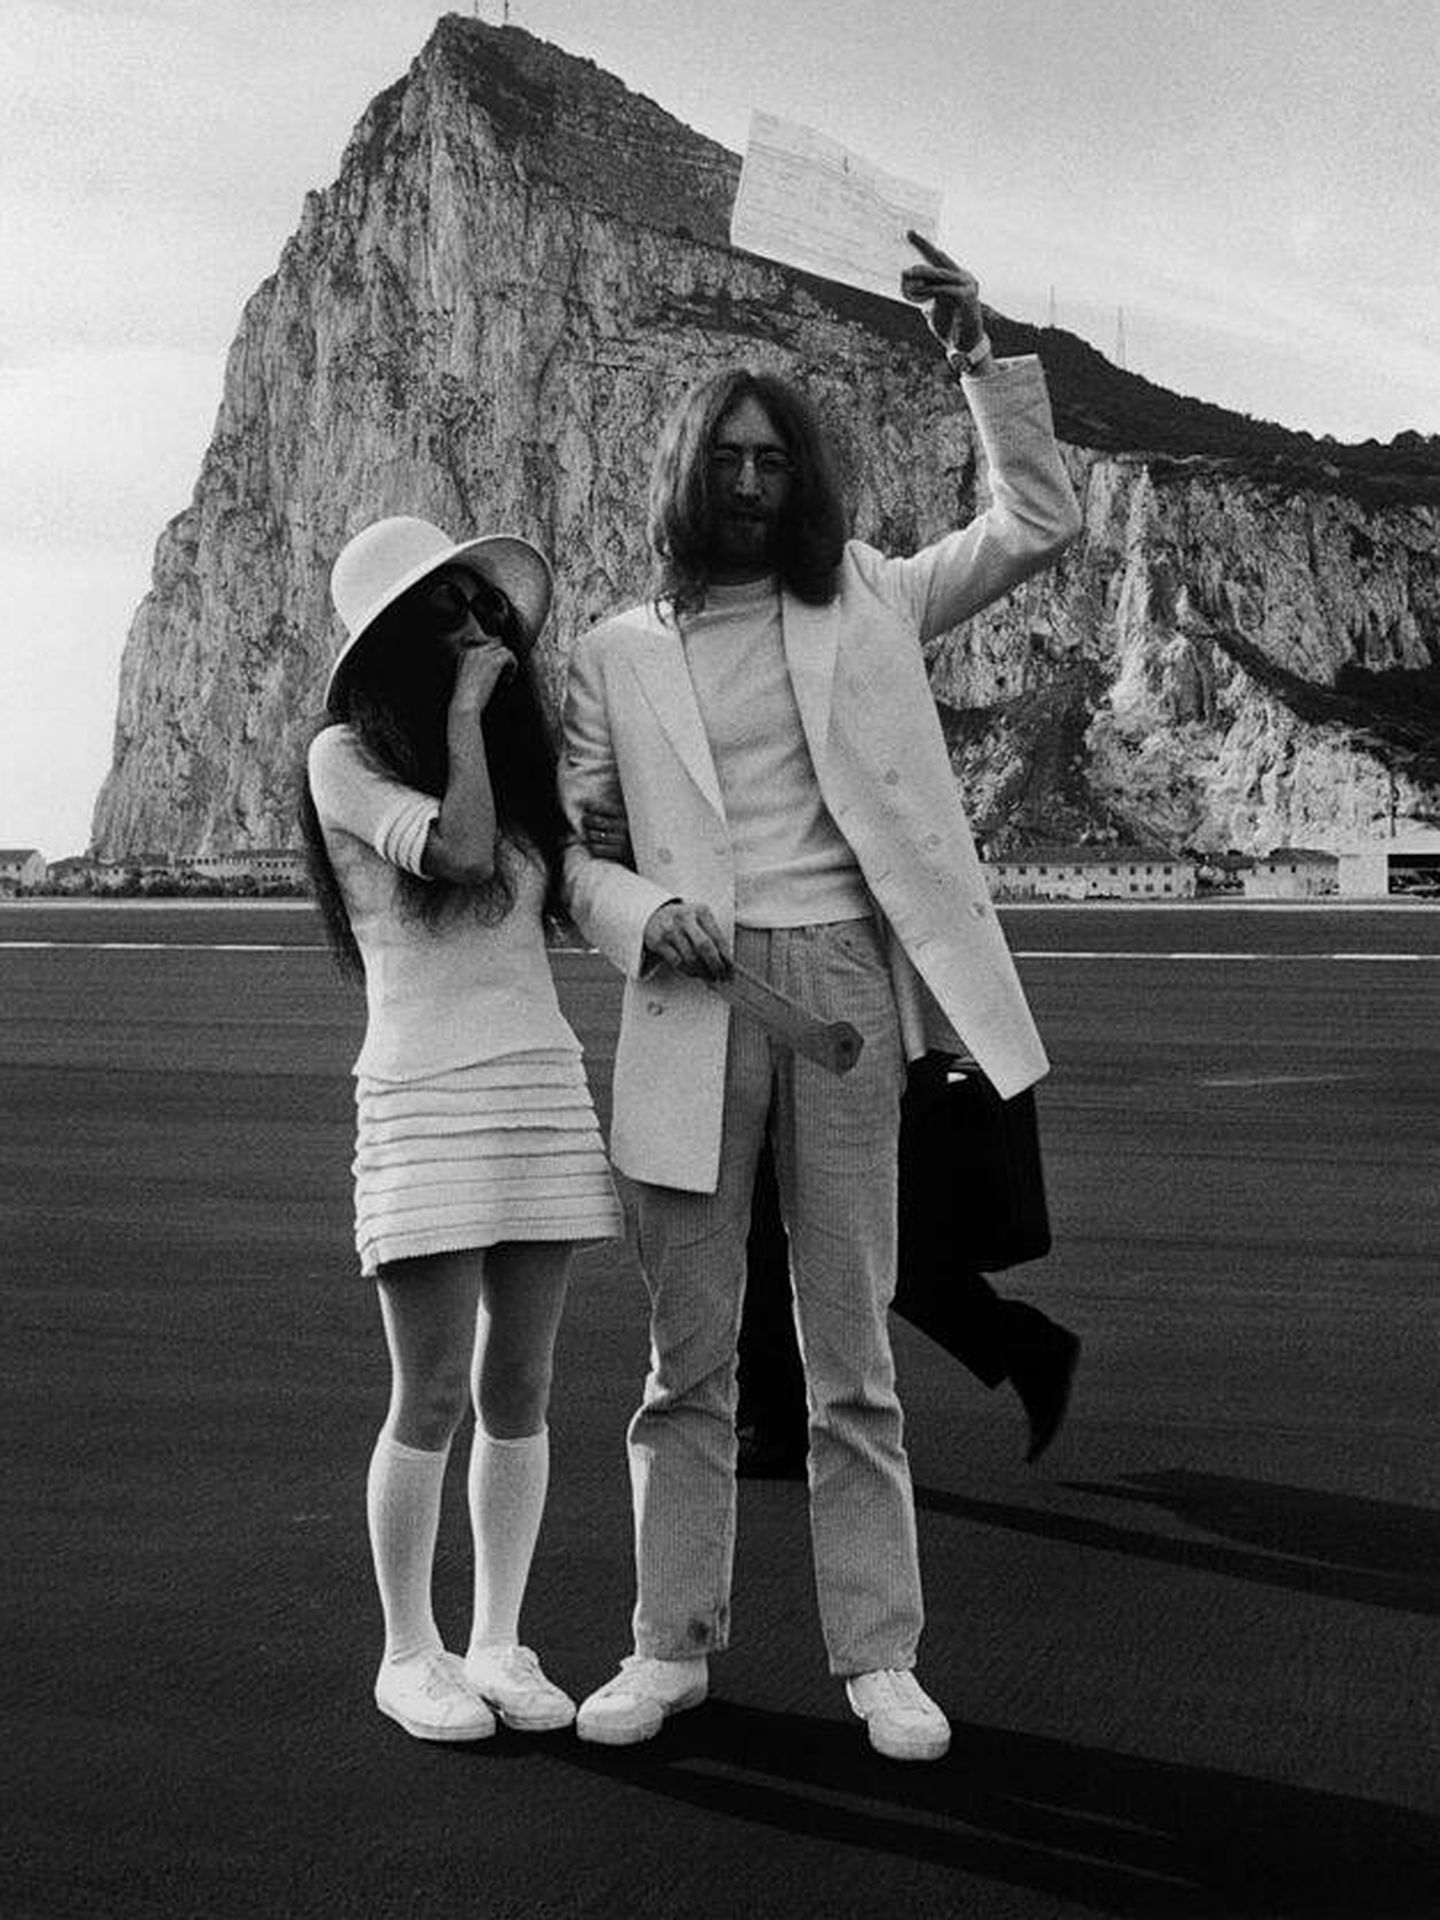 Boda de Yoko Ono y Jonh Lennon foto de archivo. (Getty Images)